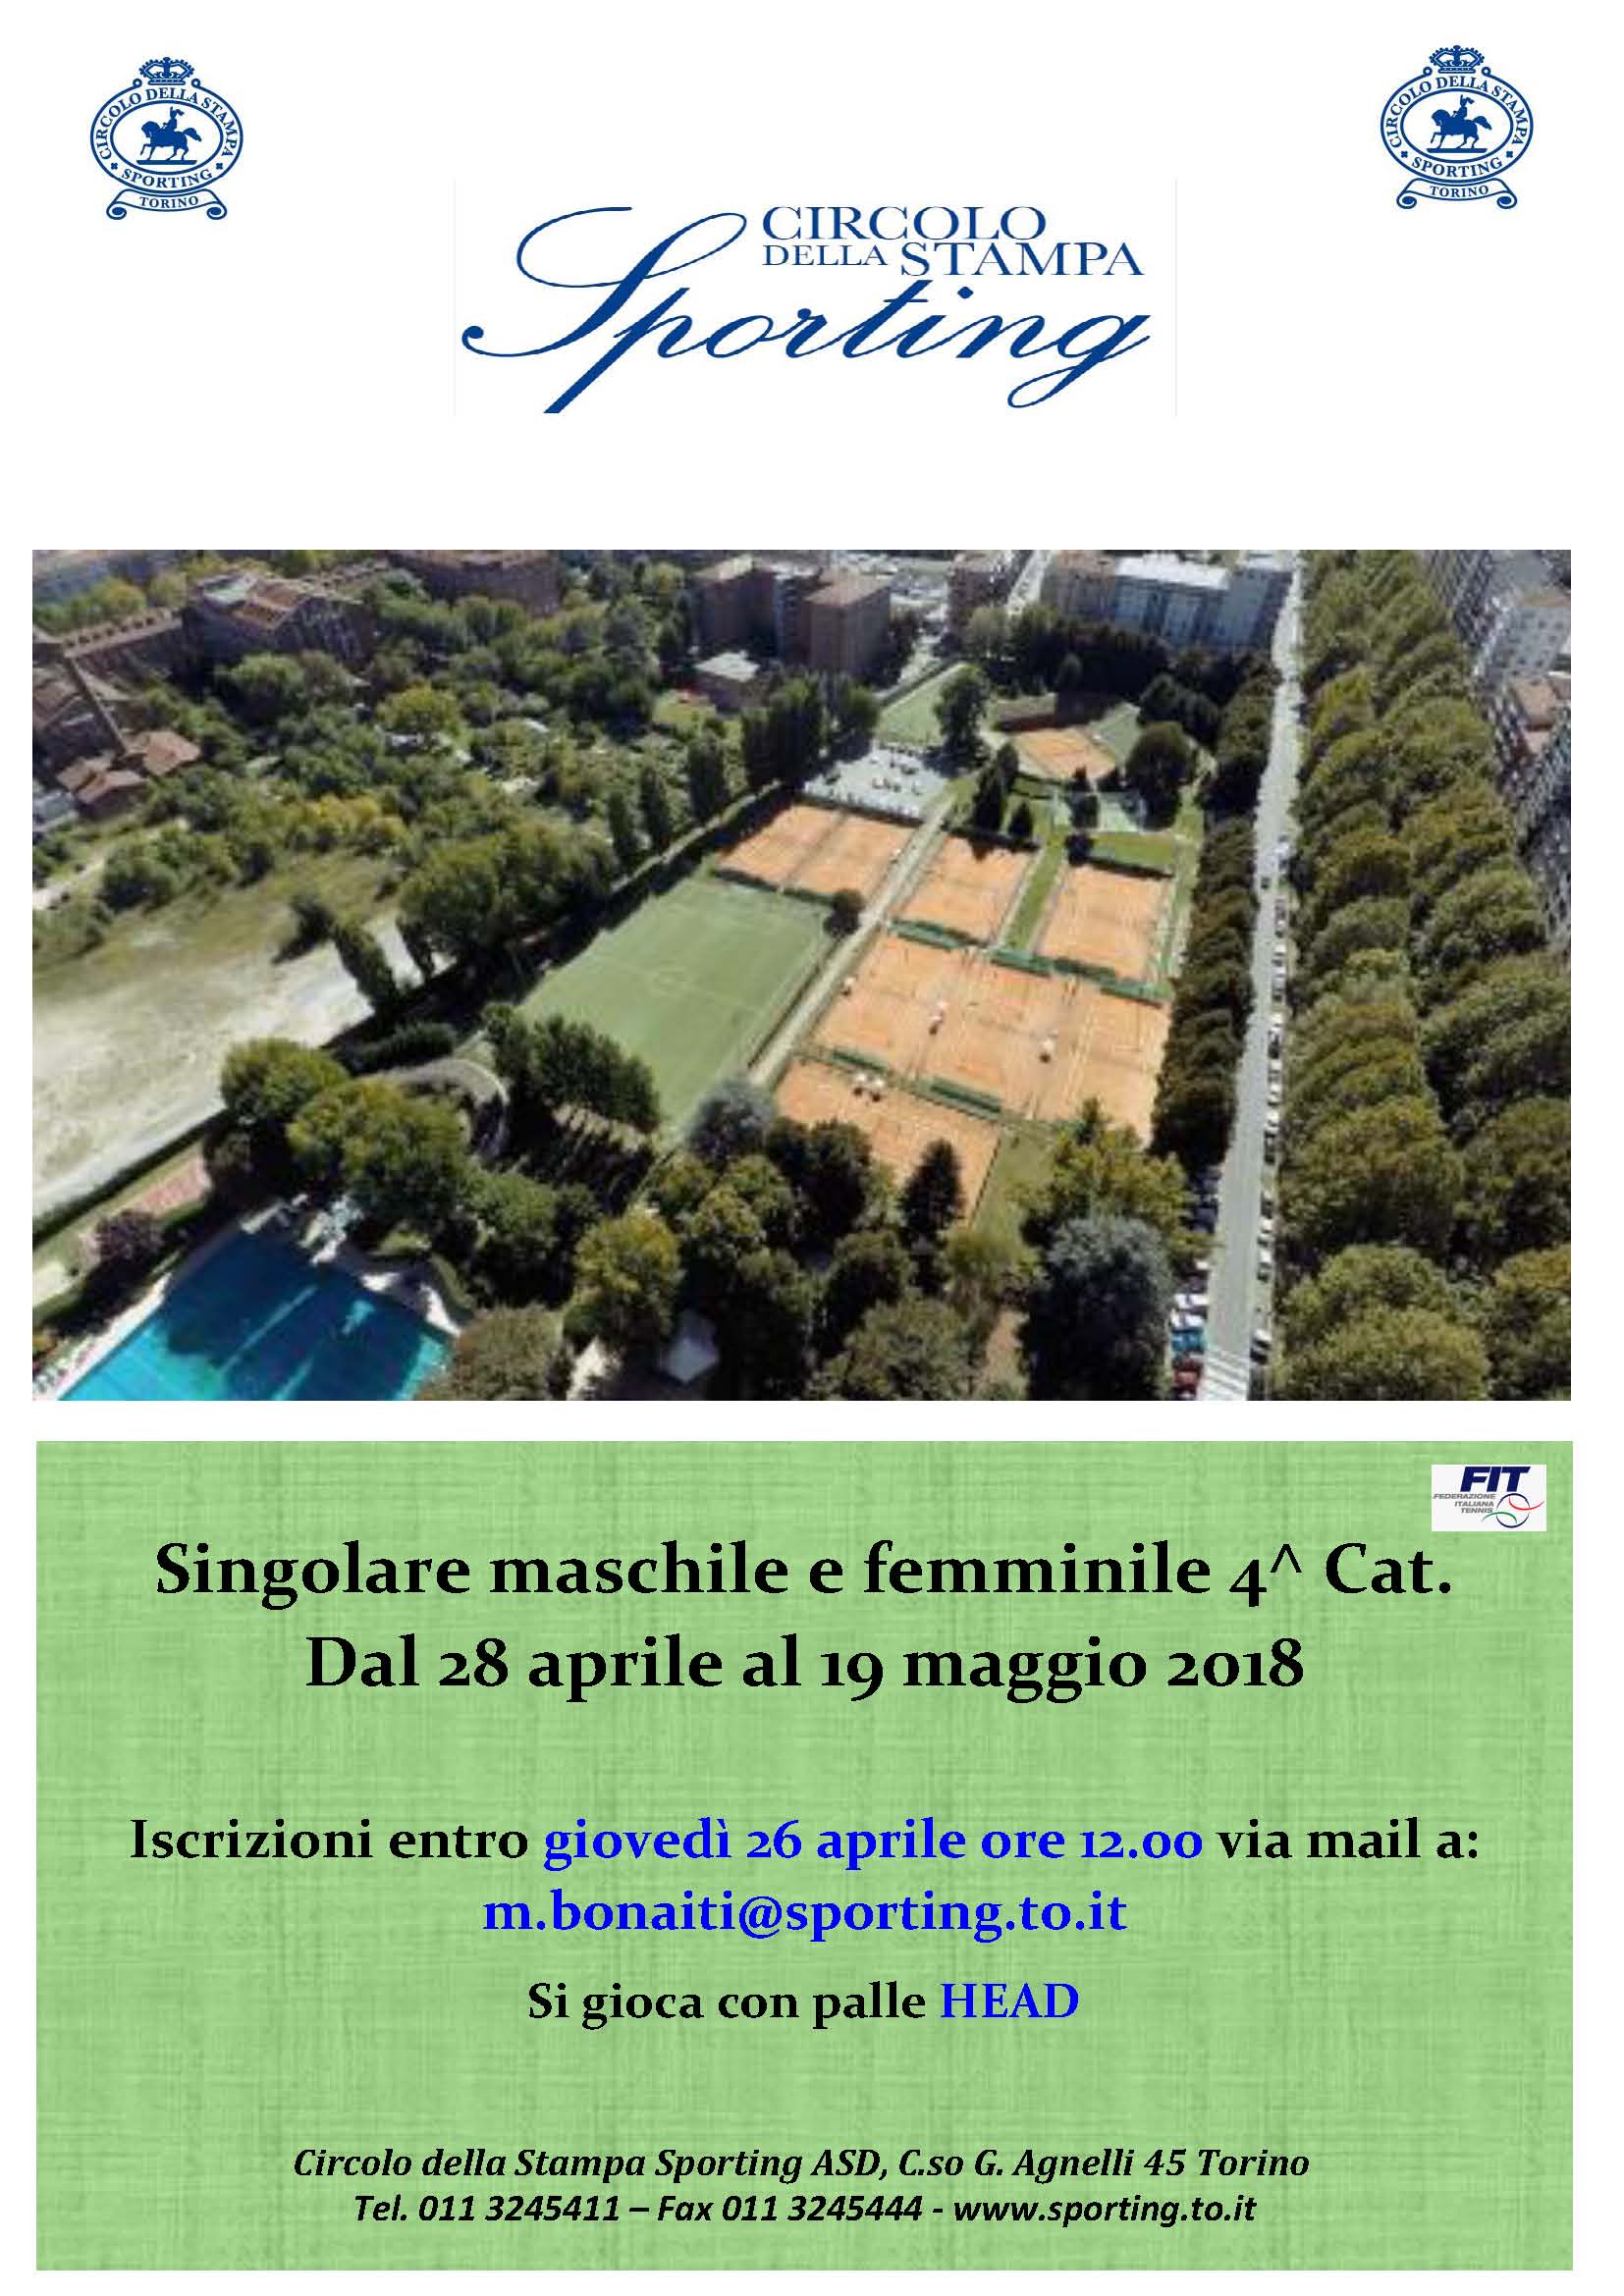 TORNEO DI SINGOLARE MASCHILE E FEMMINILE 4.1